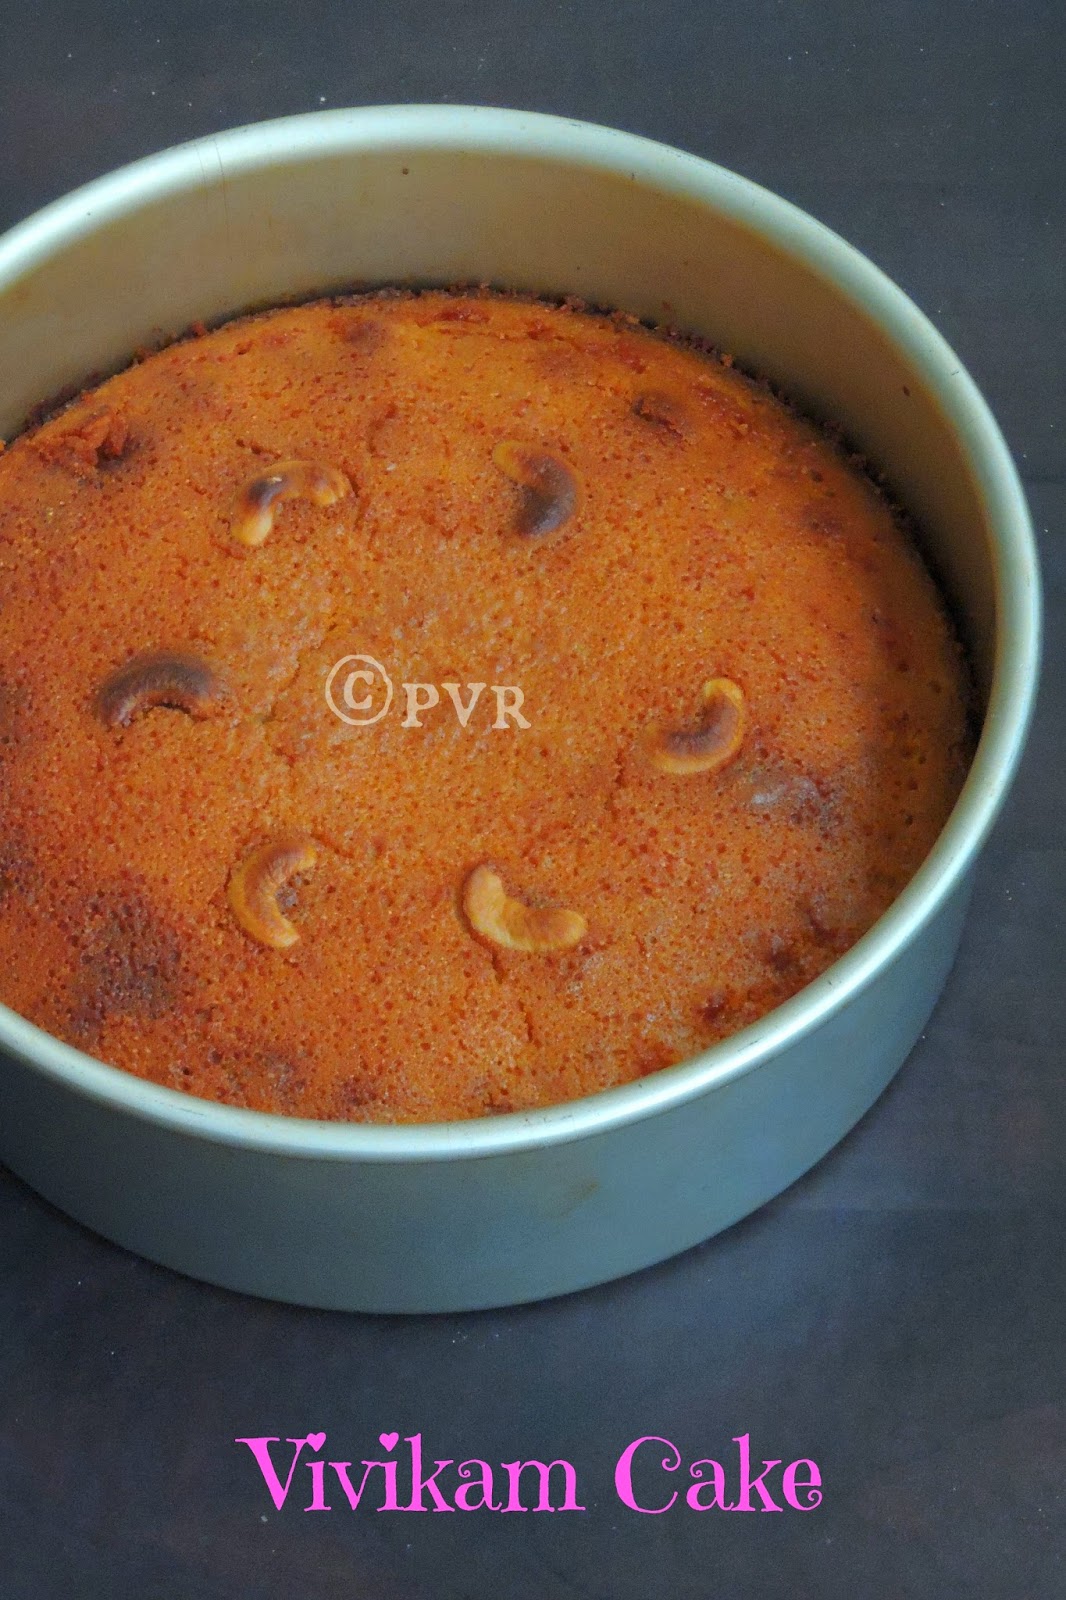 Vivikam cake, Puducherry cake